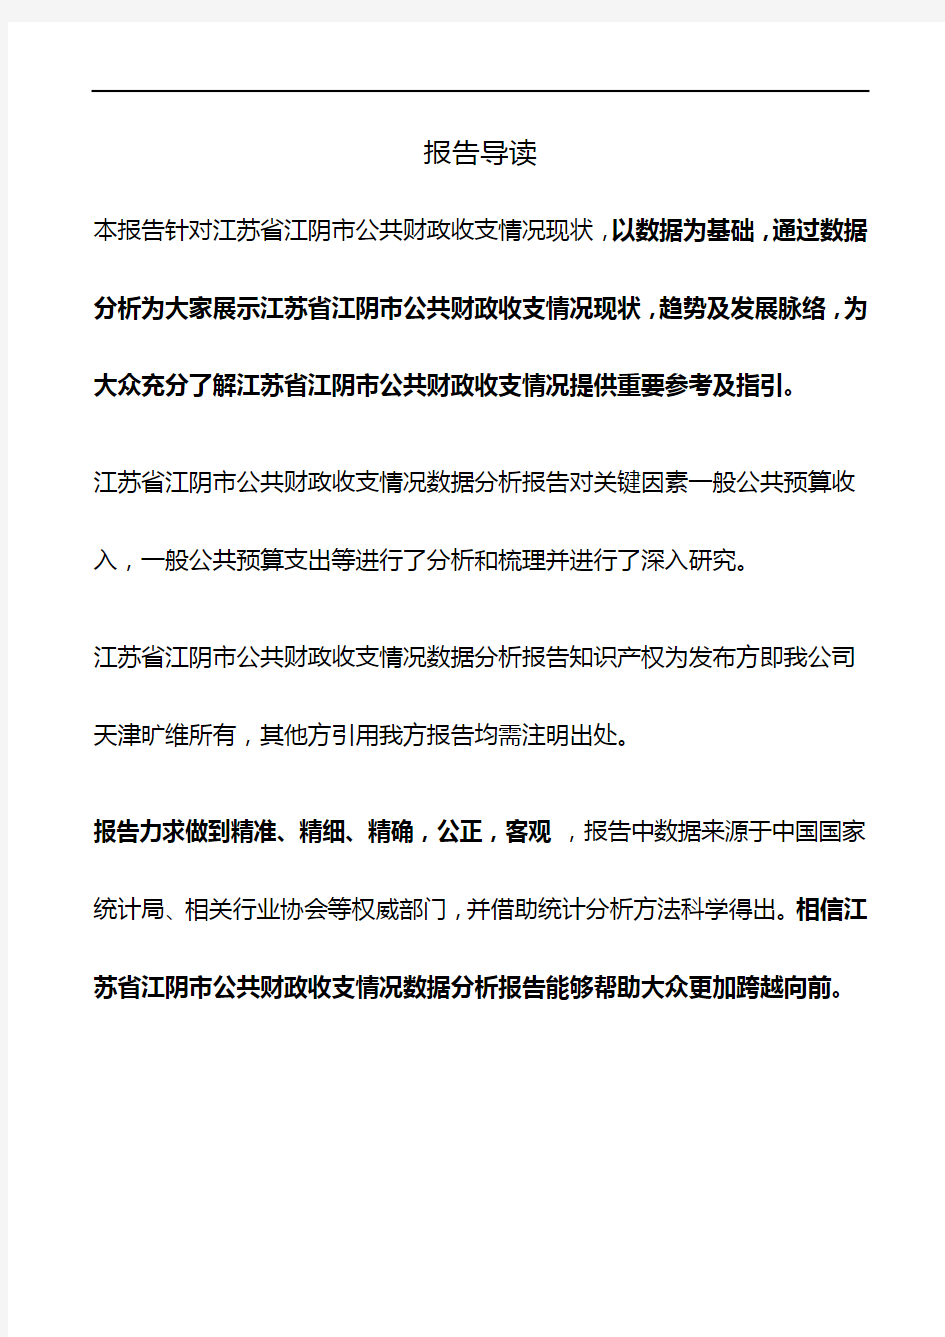 江苏省江阴市公共财政收支情况3年数据分析报告2019版